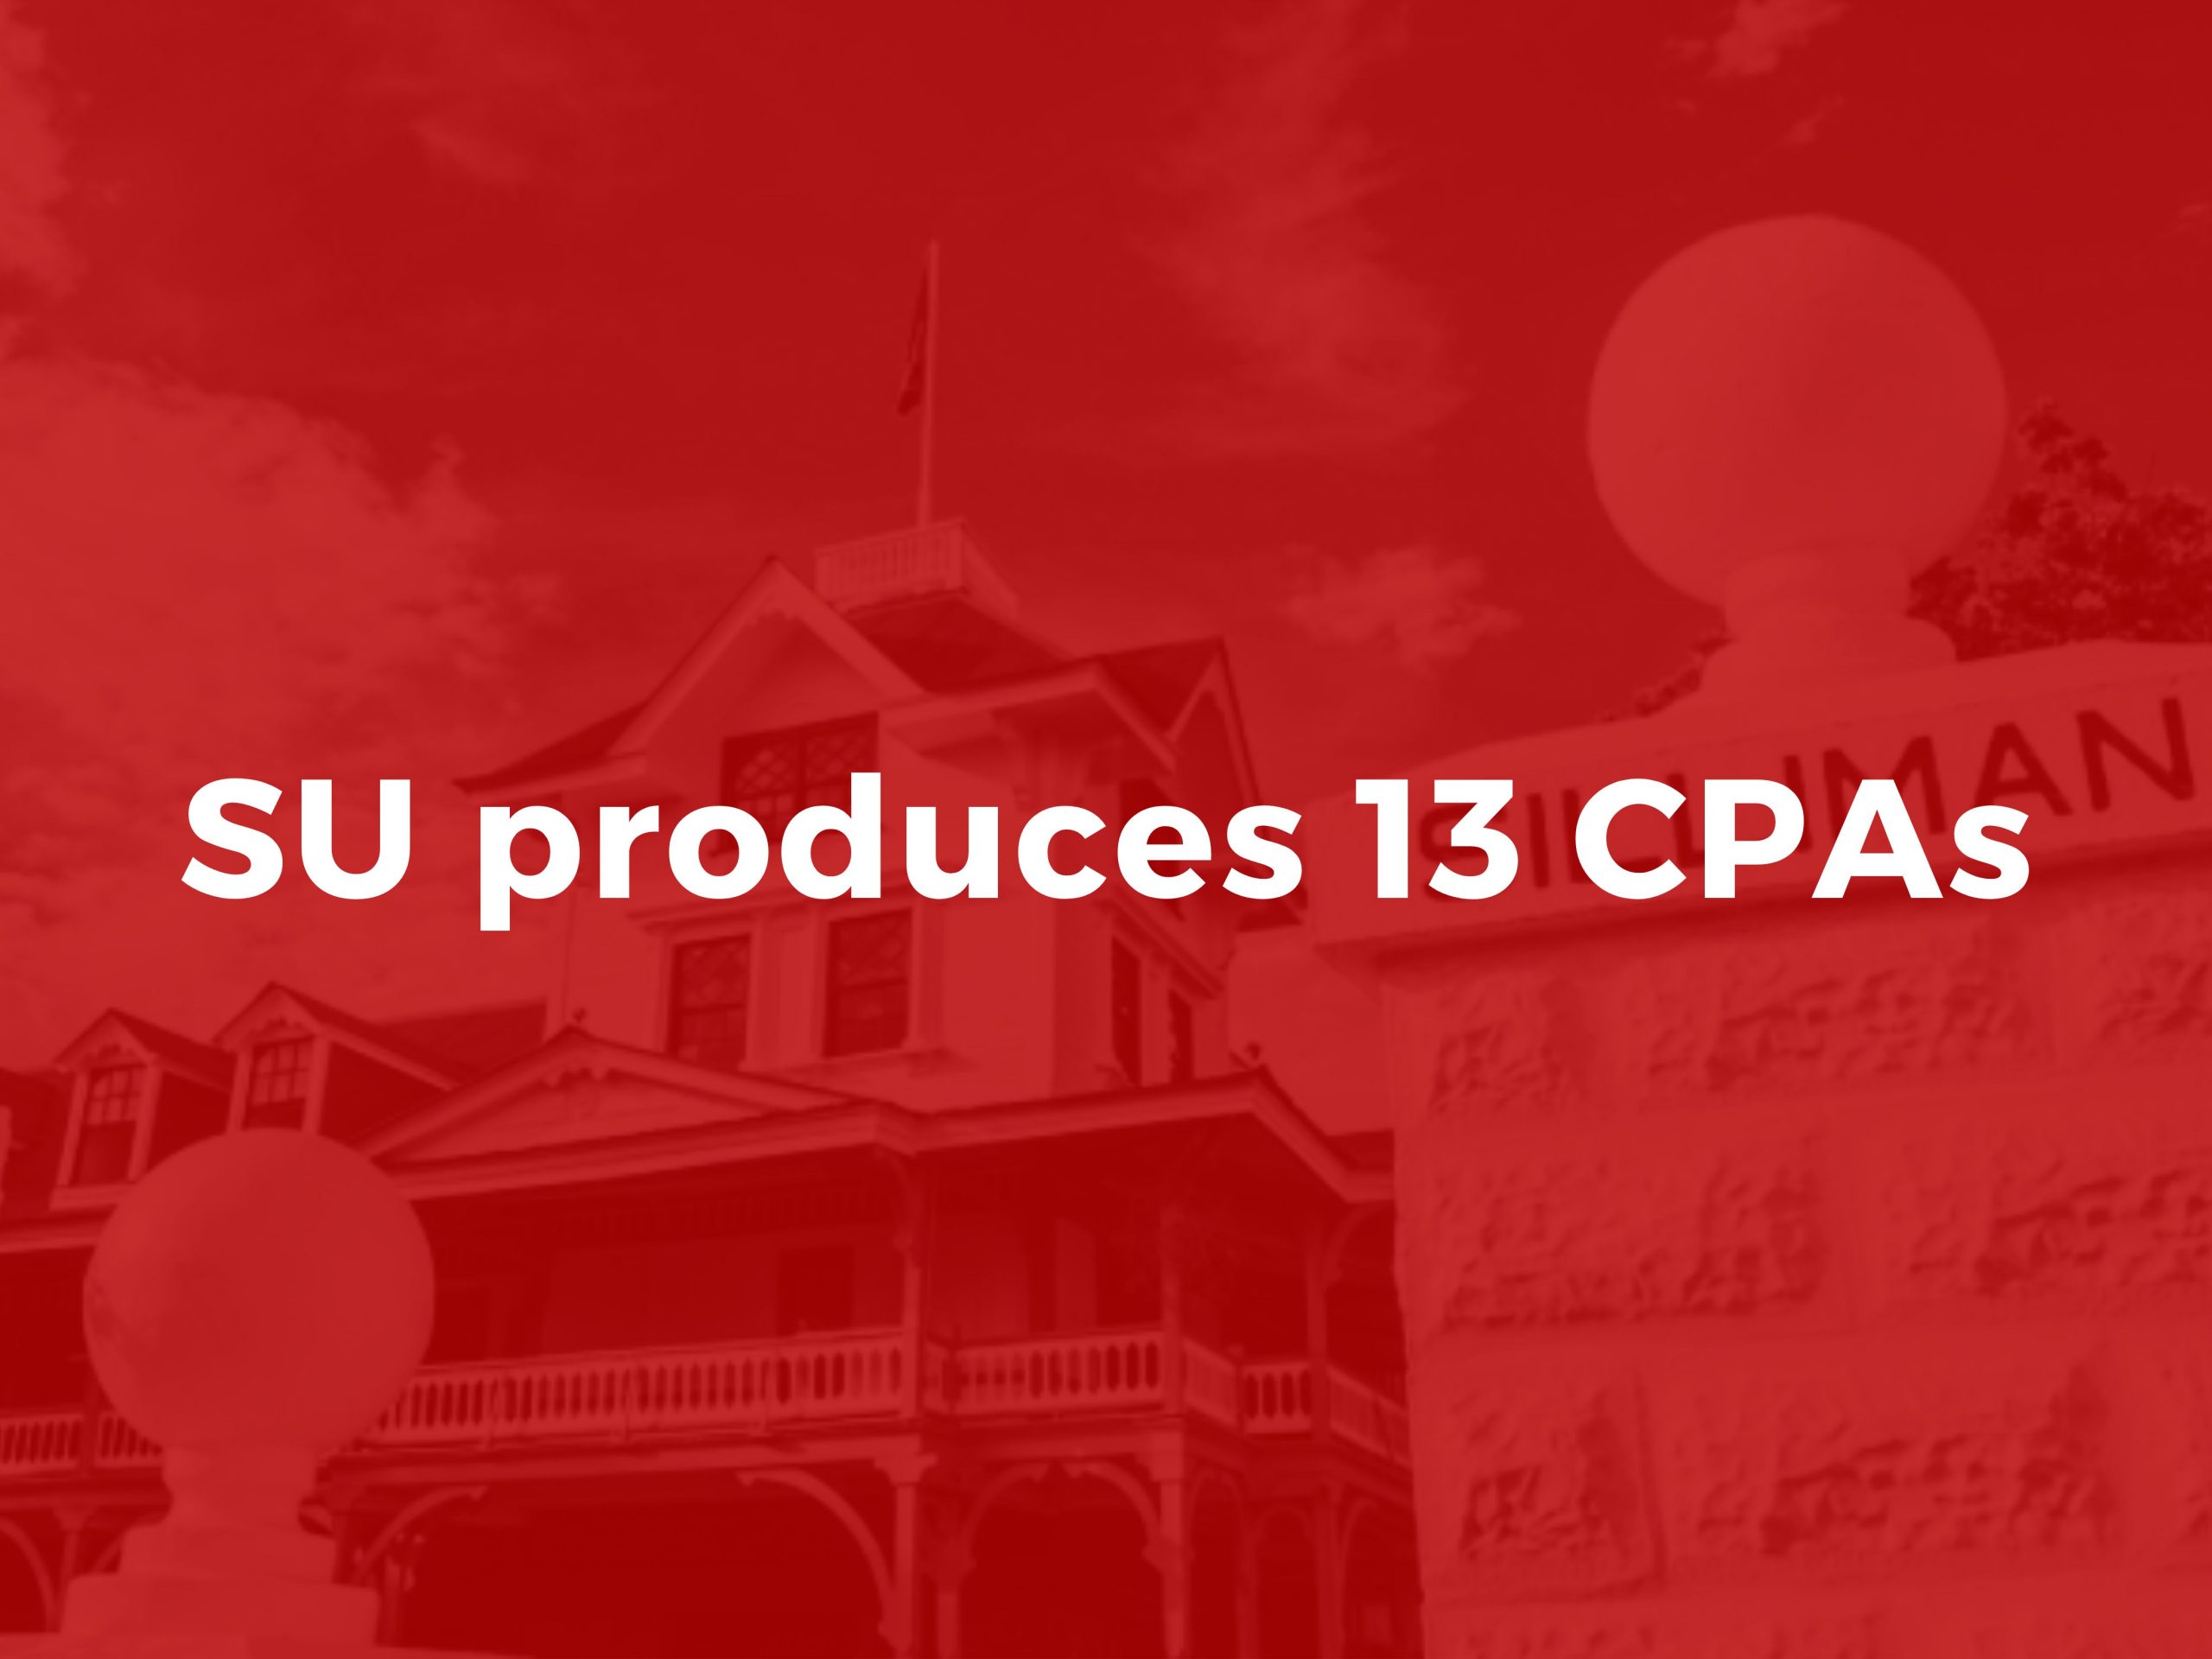 SU produces 13 CPAs